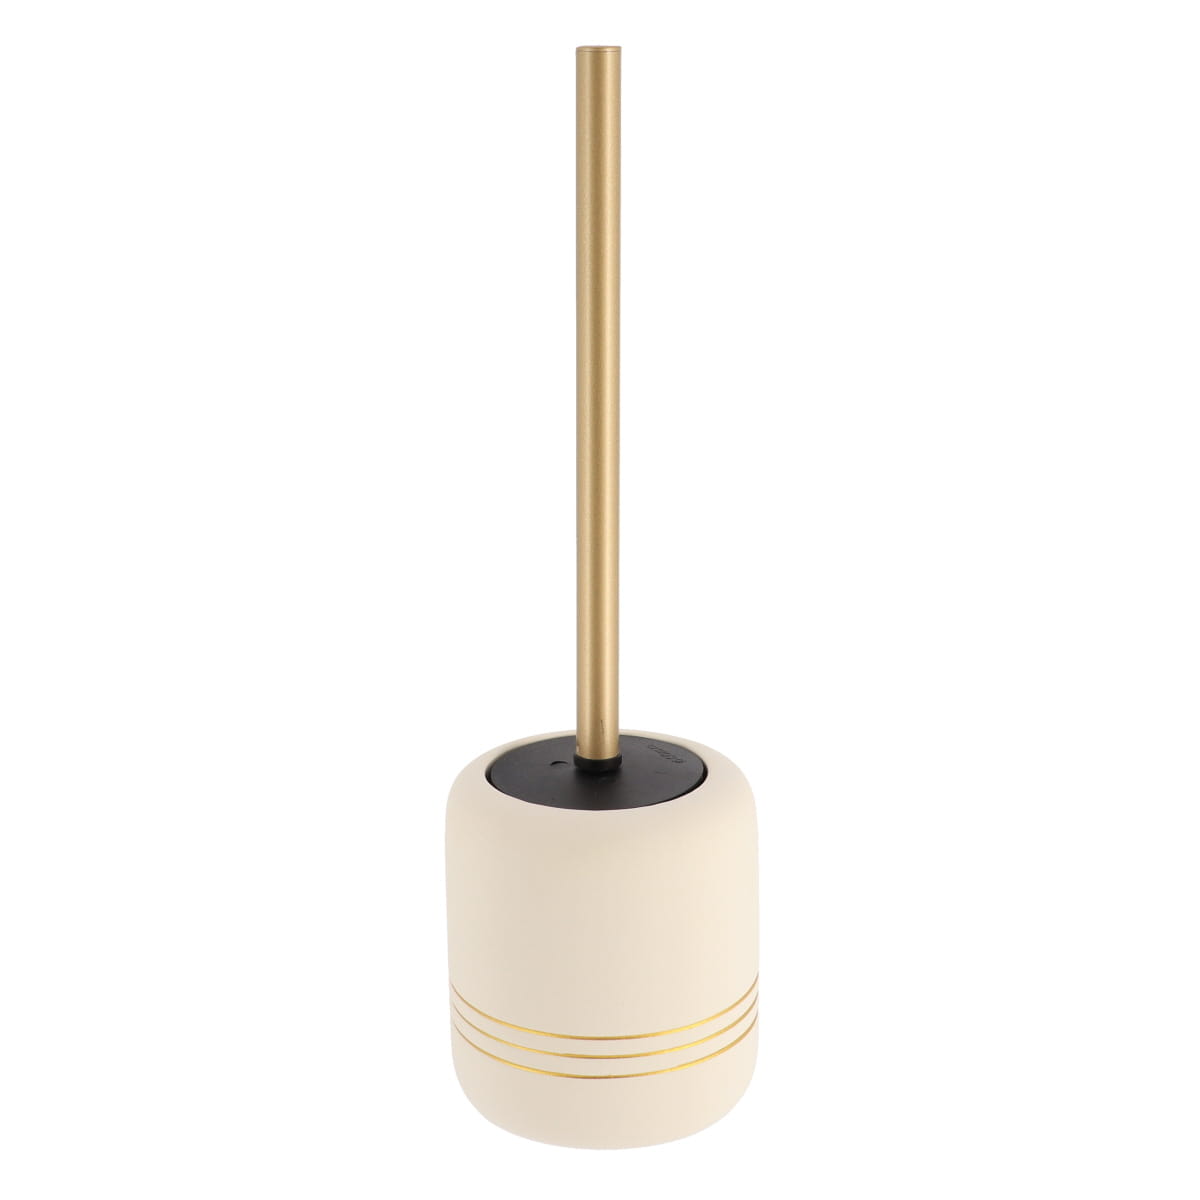 Afscheid periscoop Bijlage Toiletborstel met houder stoneware crème-goud - Thuisplaza